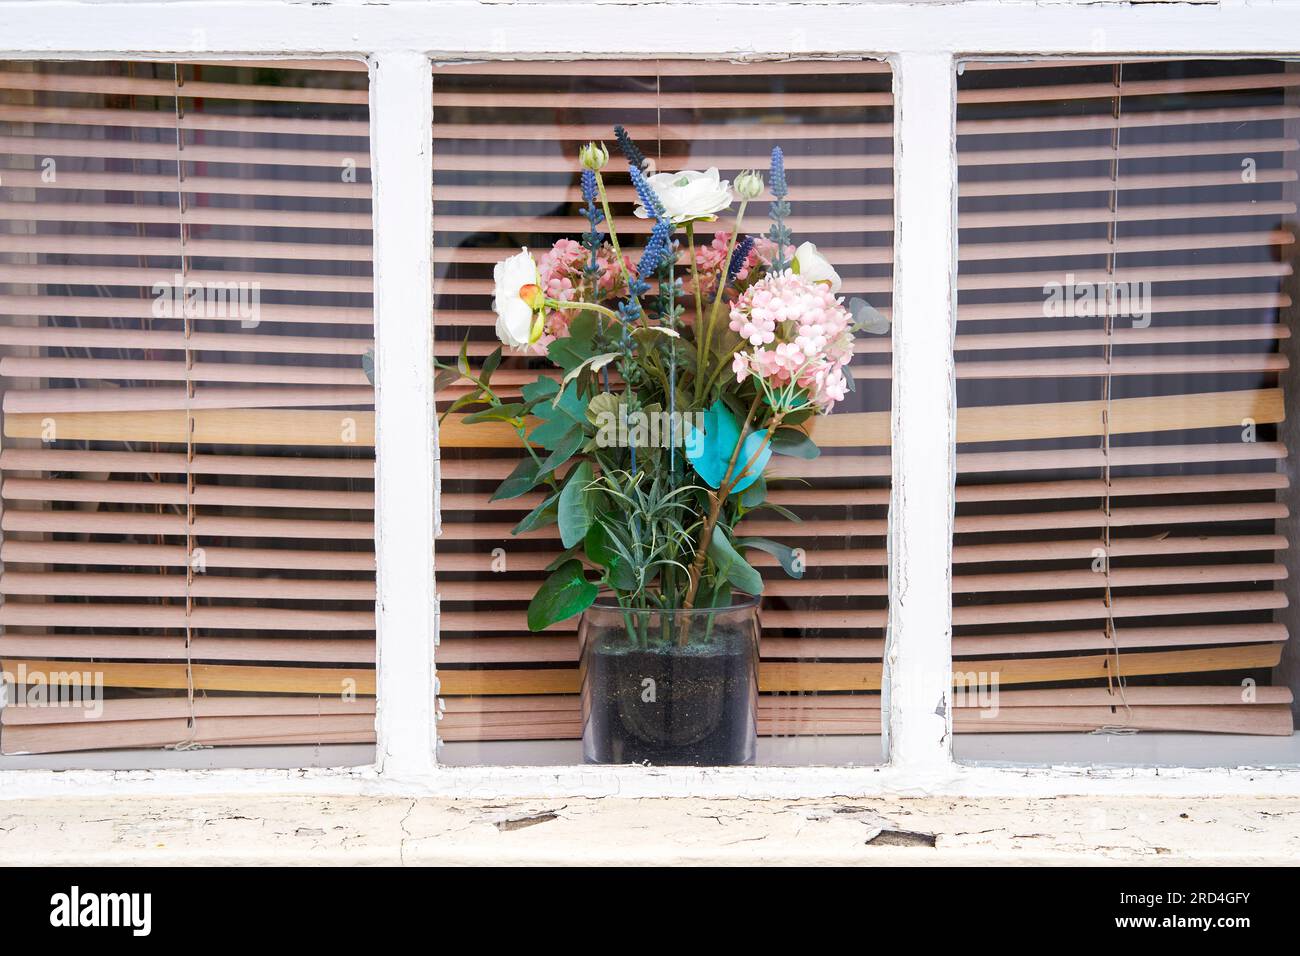 Fleurs en plastique dans un pot exposé dans une fenêtre avec des stores vénitiens derrière Banque D'Images